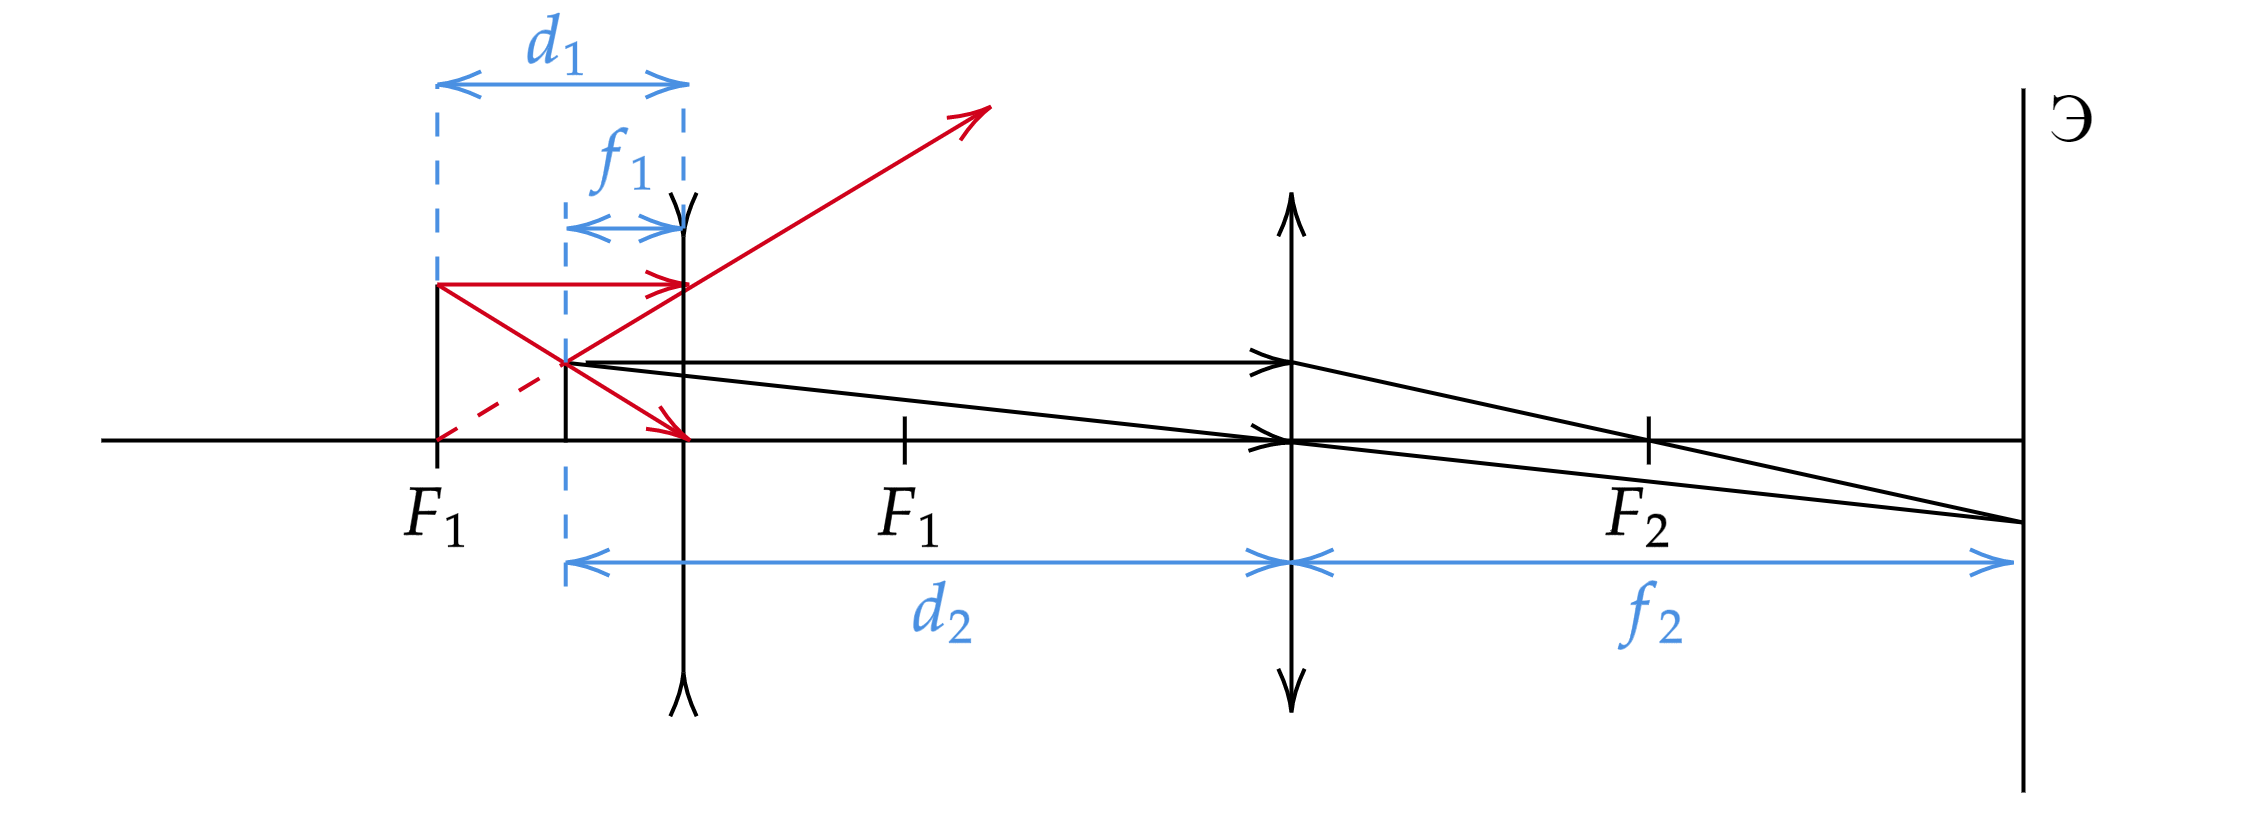 Собирающая линза дает прямое изображение предмета с увеличением Γ=2